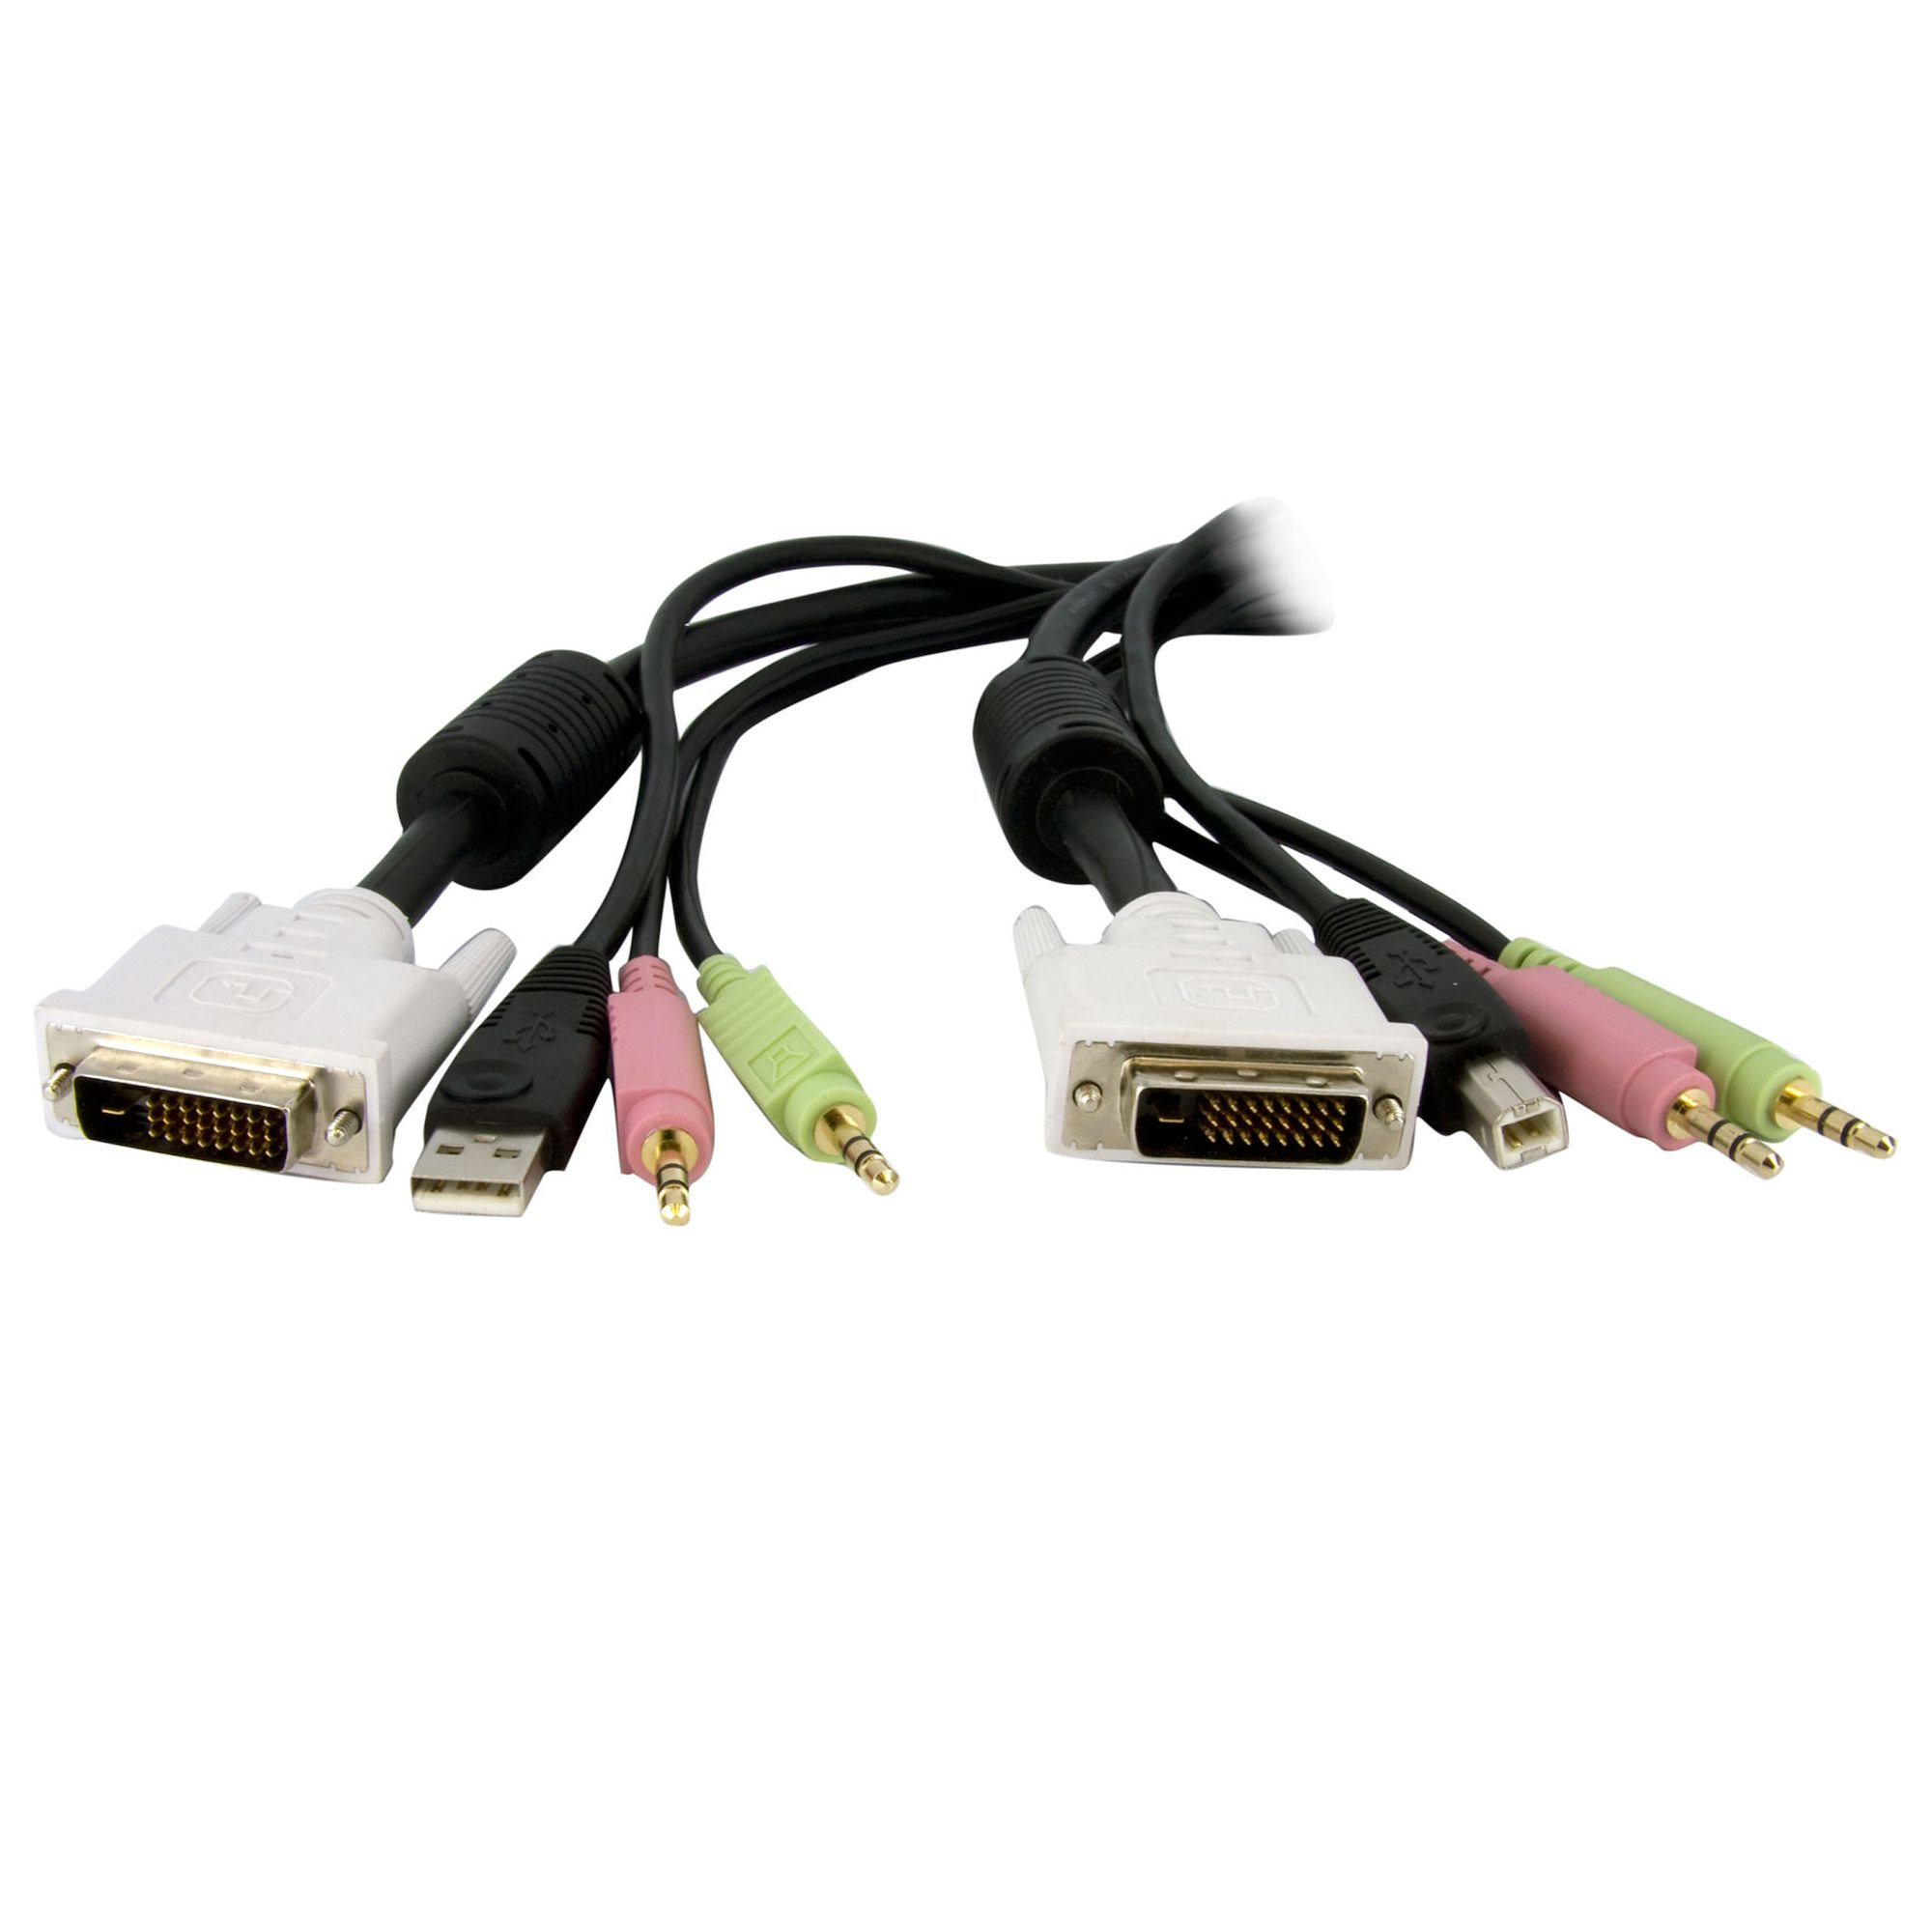 StarTech.com 1,8 m 4-in-1 USB Dual Link DVI-D KVM-Switchkabel mit Audio und Mikrofon - Tastatur- / Video- / Maus- / Audio-Kabel - USB, mini-phone stereo 3.5 mm, DVI-D (M)